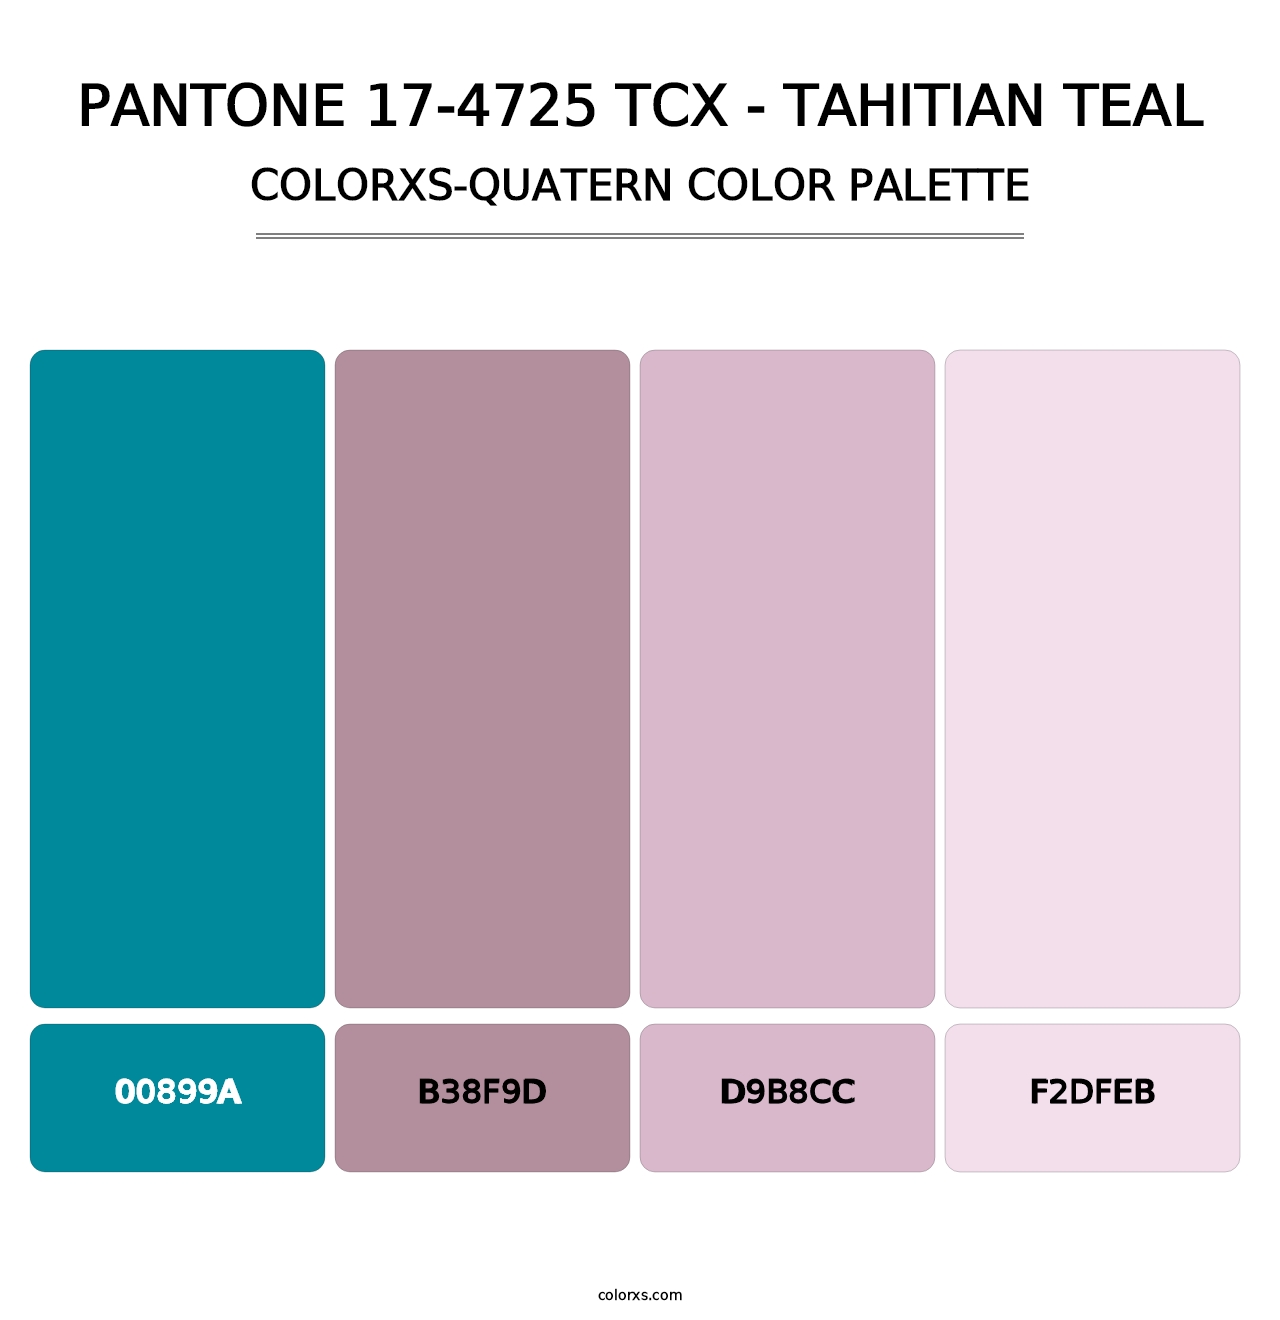 PANTONE 17-4725 TCX - Tahitian Teal - Colorxs Quatern Palette